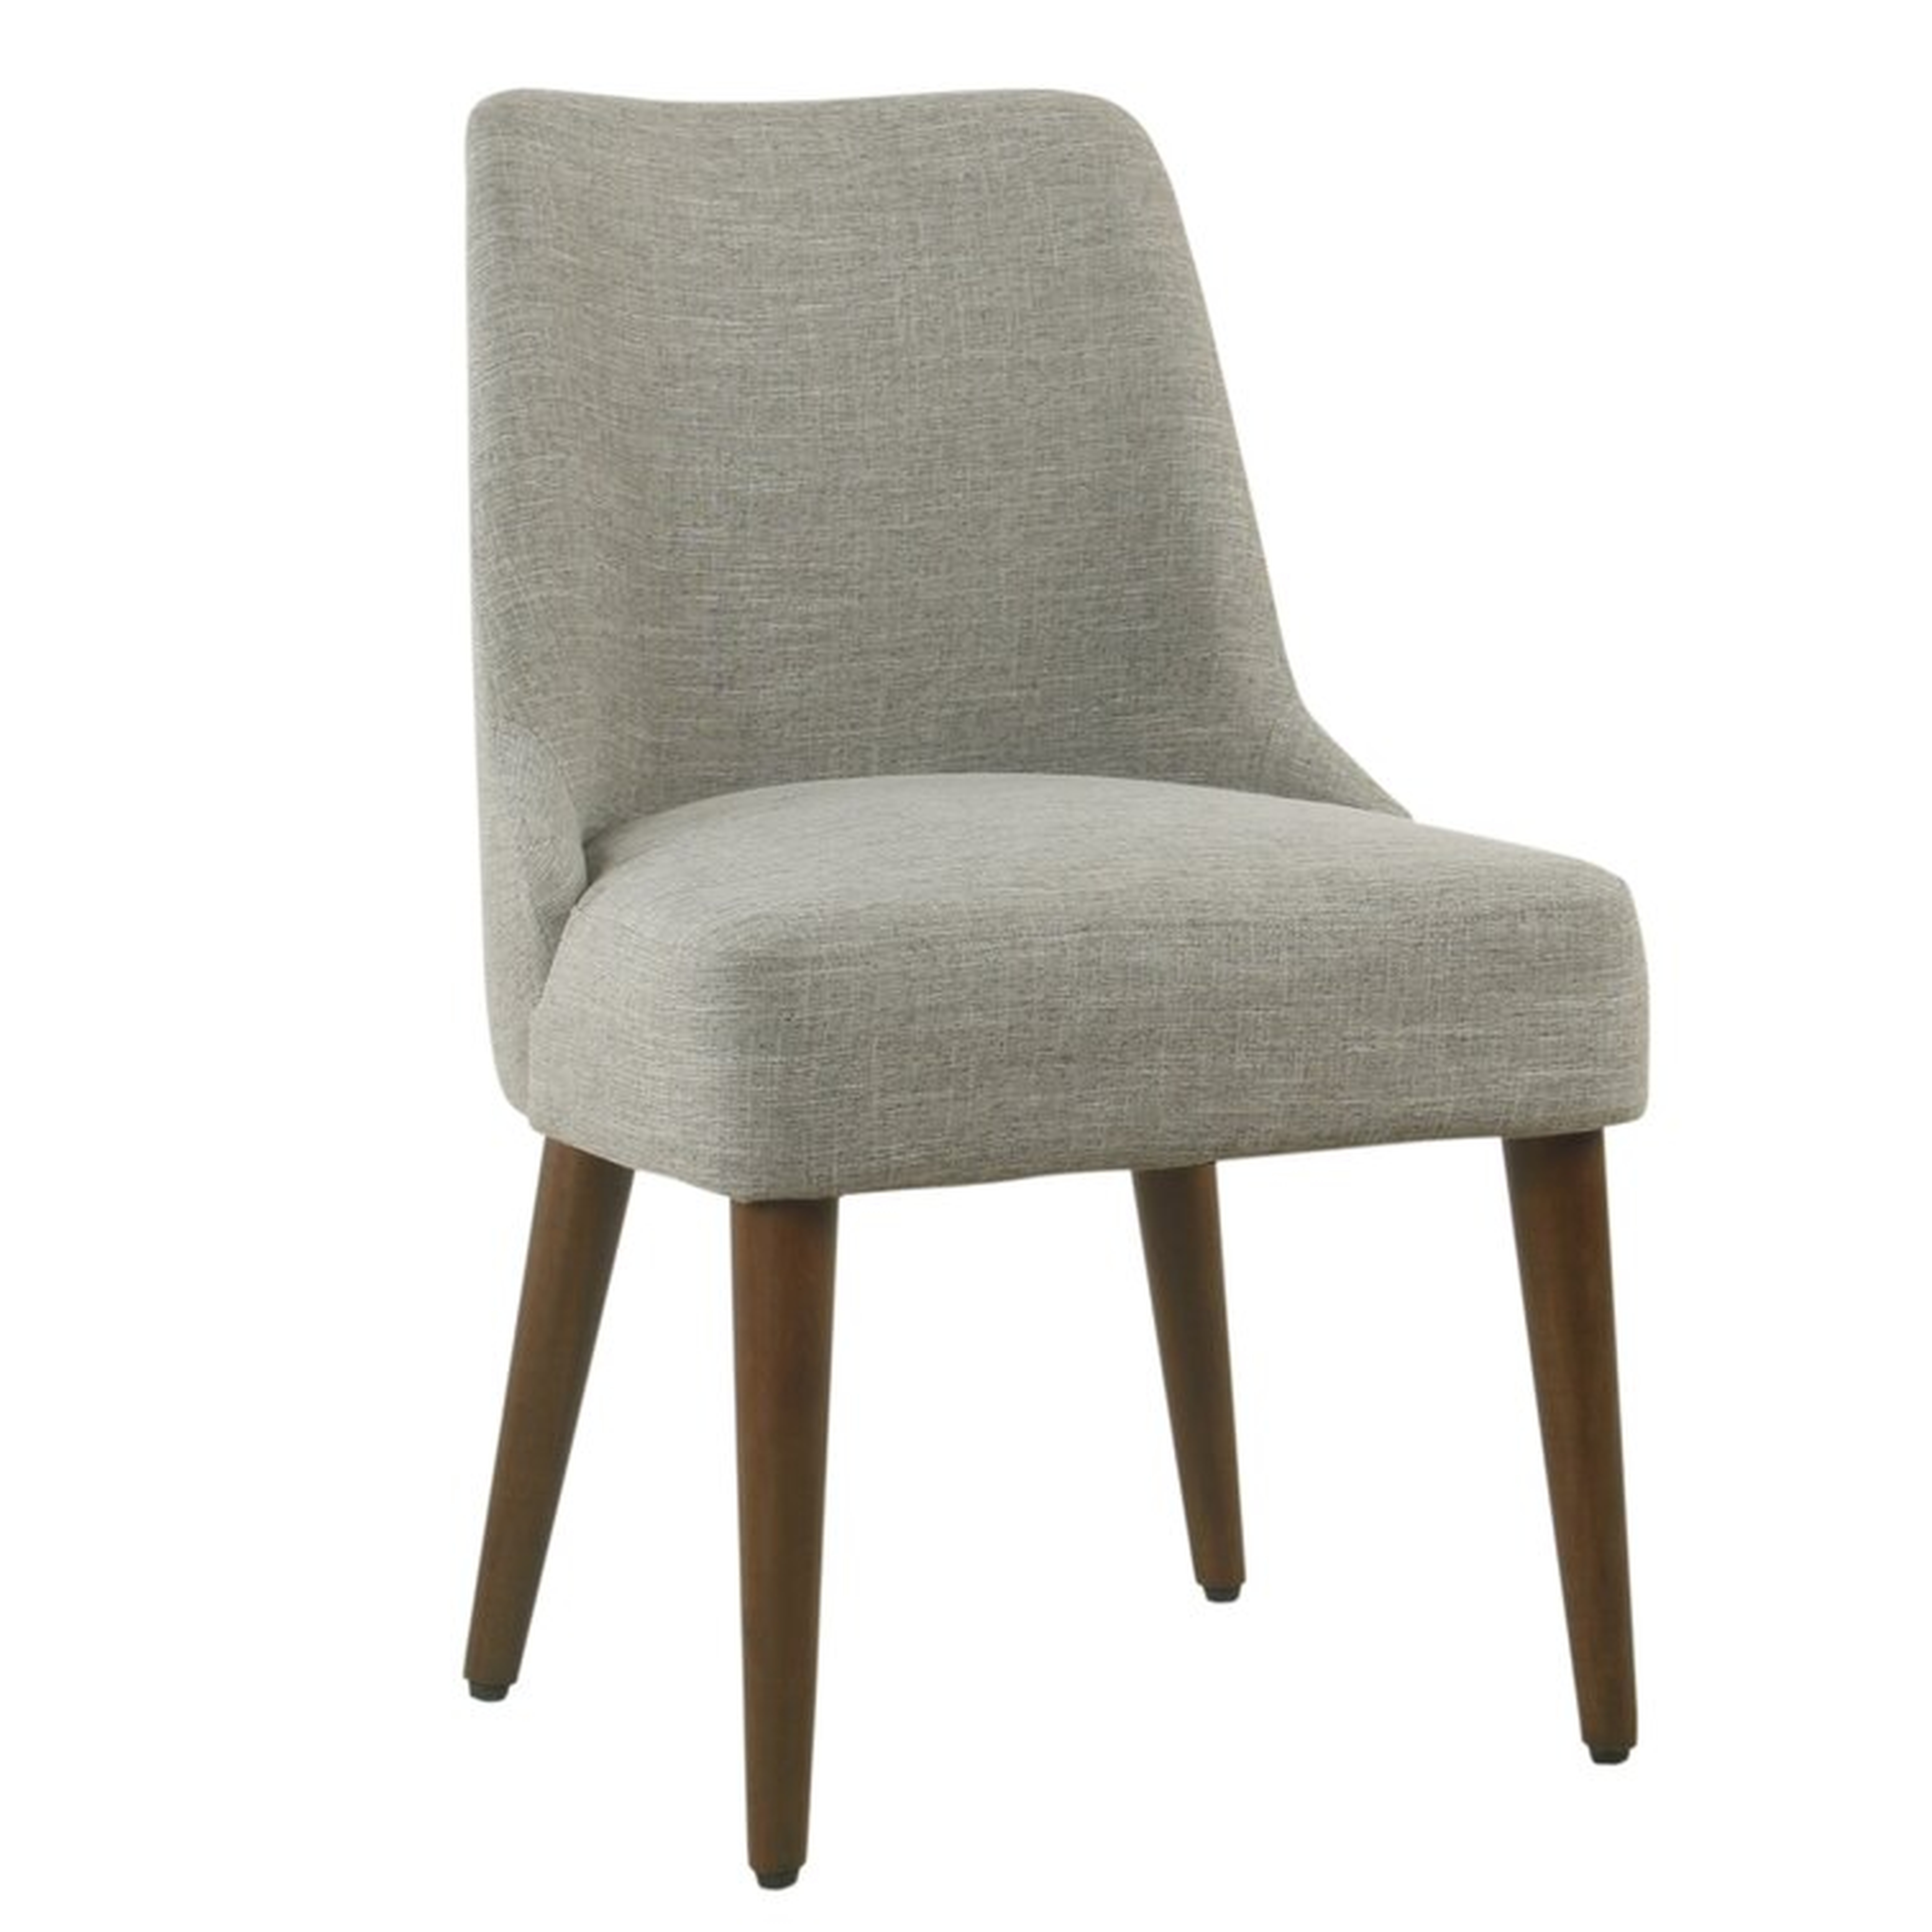 Rossetti Side Chair in Gray - Wayfair